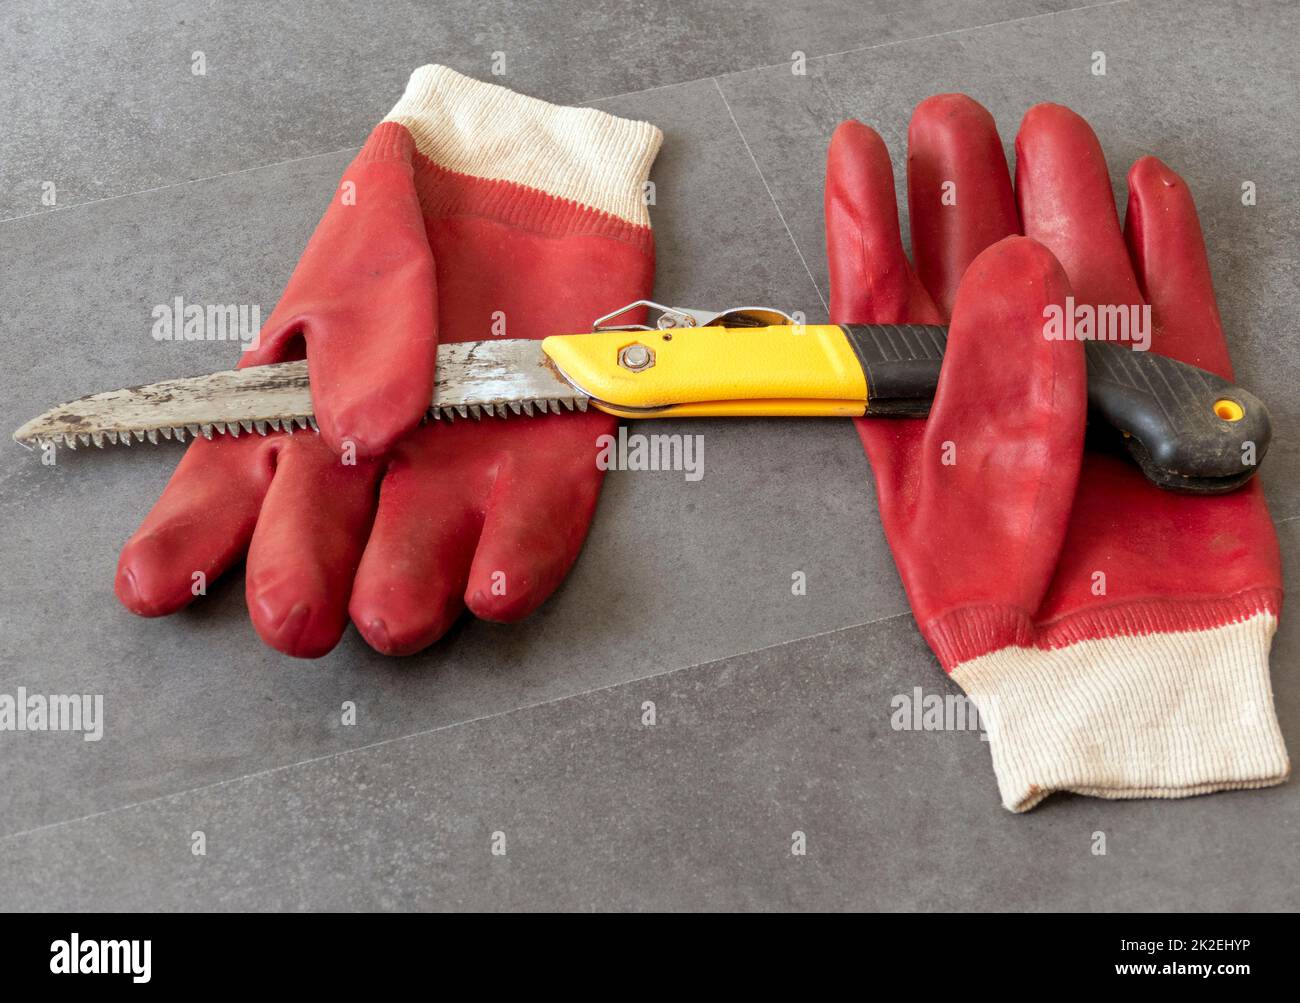 utilisation de gants pour éviter les blessures aux mains lors du travail dans la scie à atelier et de gants de travail épais Banque D'Images